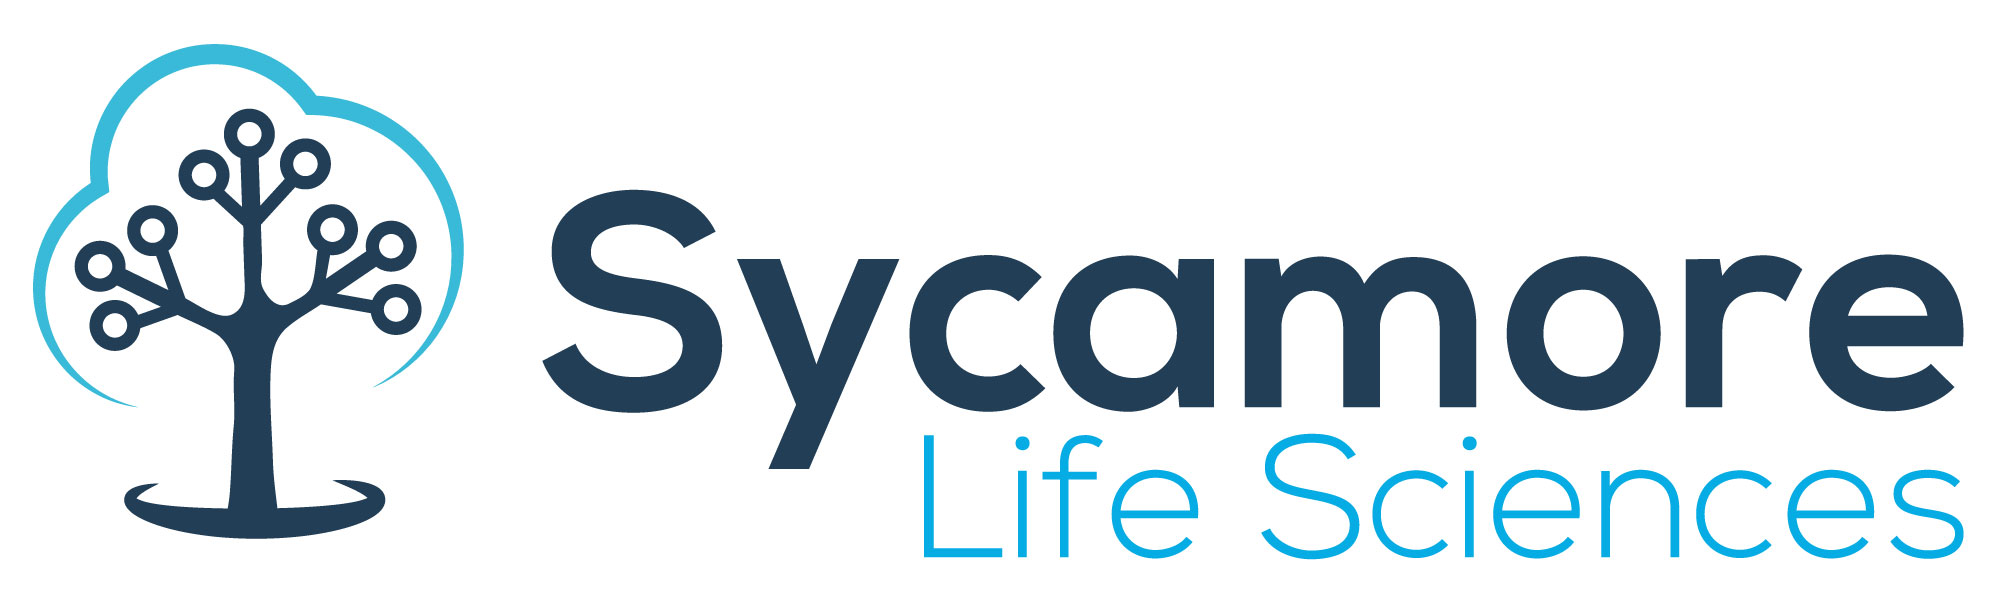 SycamoreLifeSciences_1